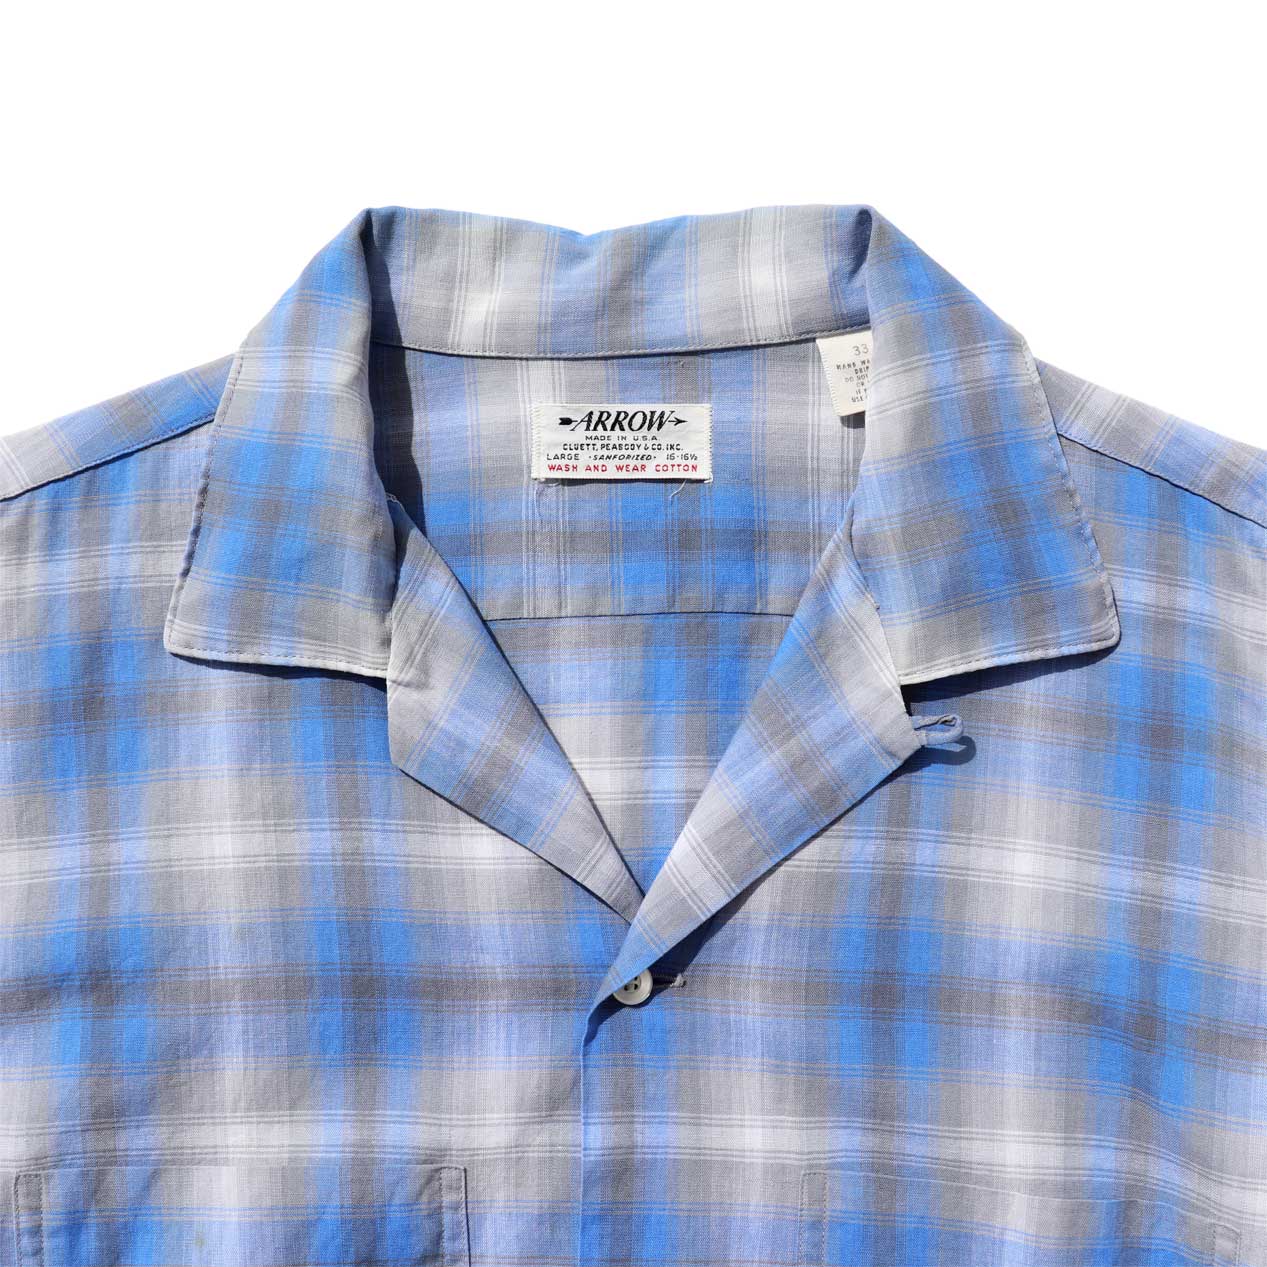 POST JUNK / 60's ARROW All Cotton Ombre Check Open Collar Shirt ...